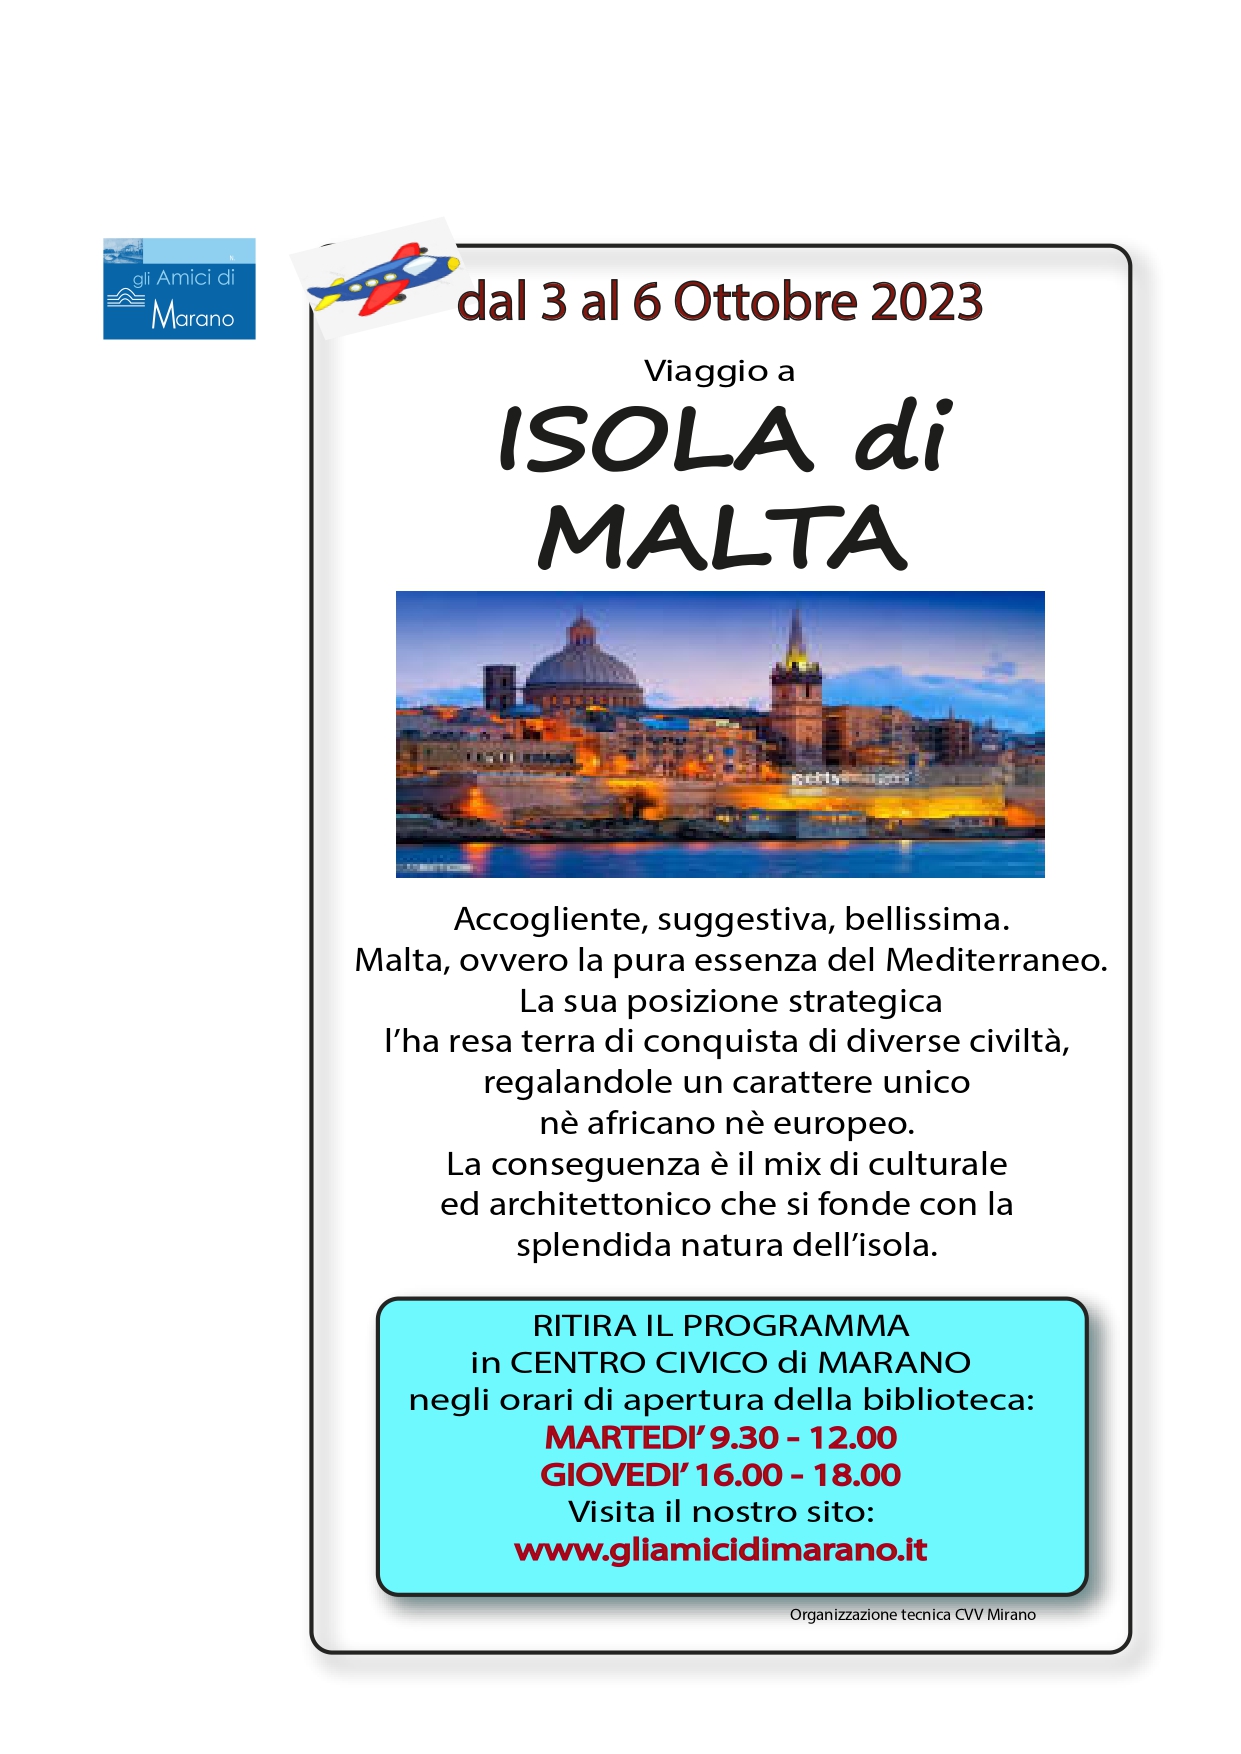 Al momento stai visualizzando Viaggio a Malta 2023